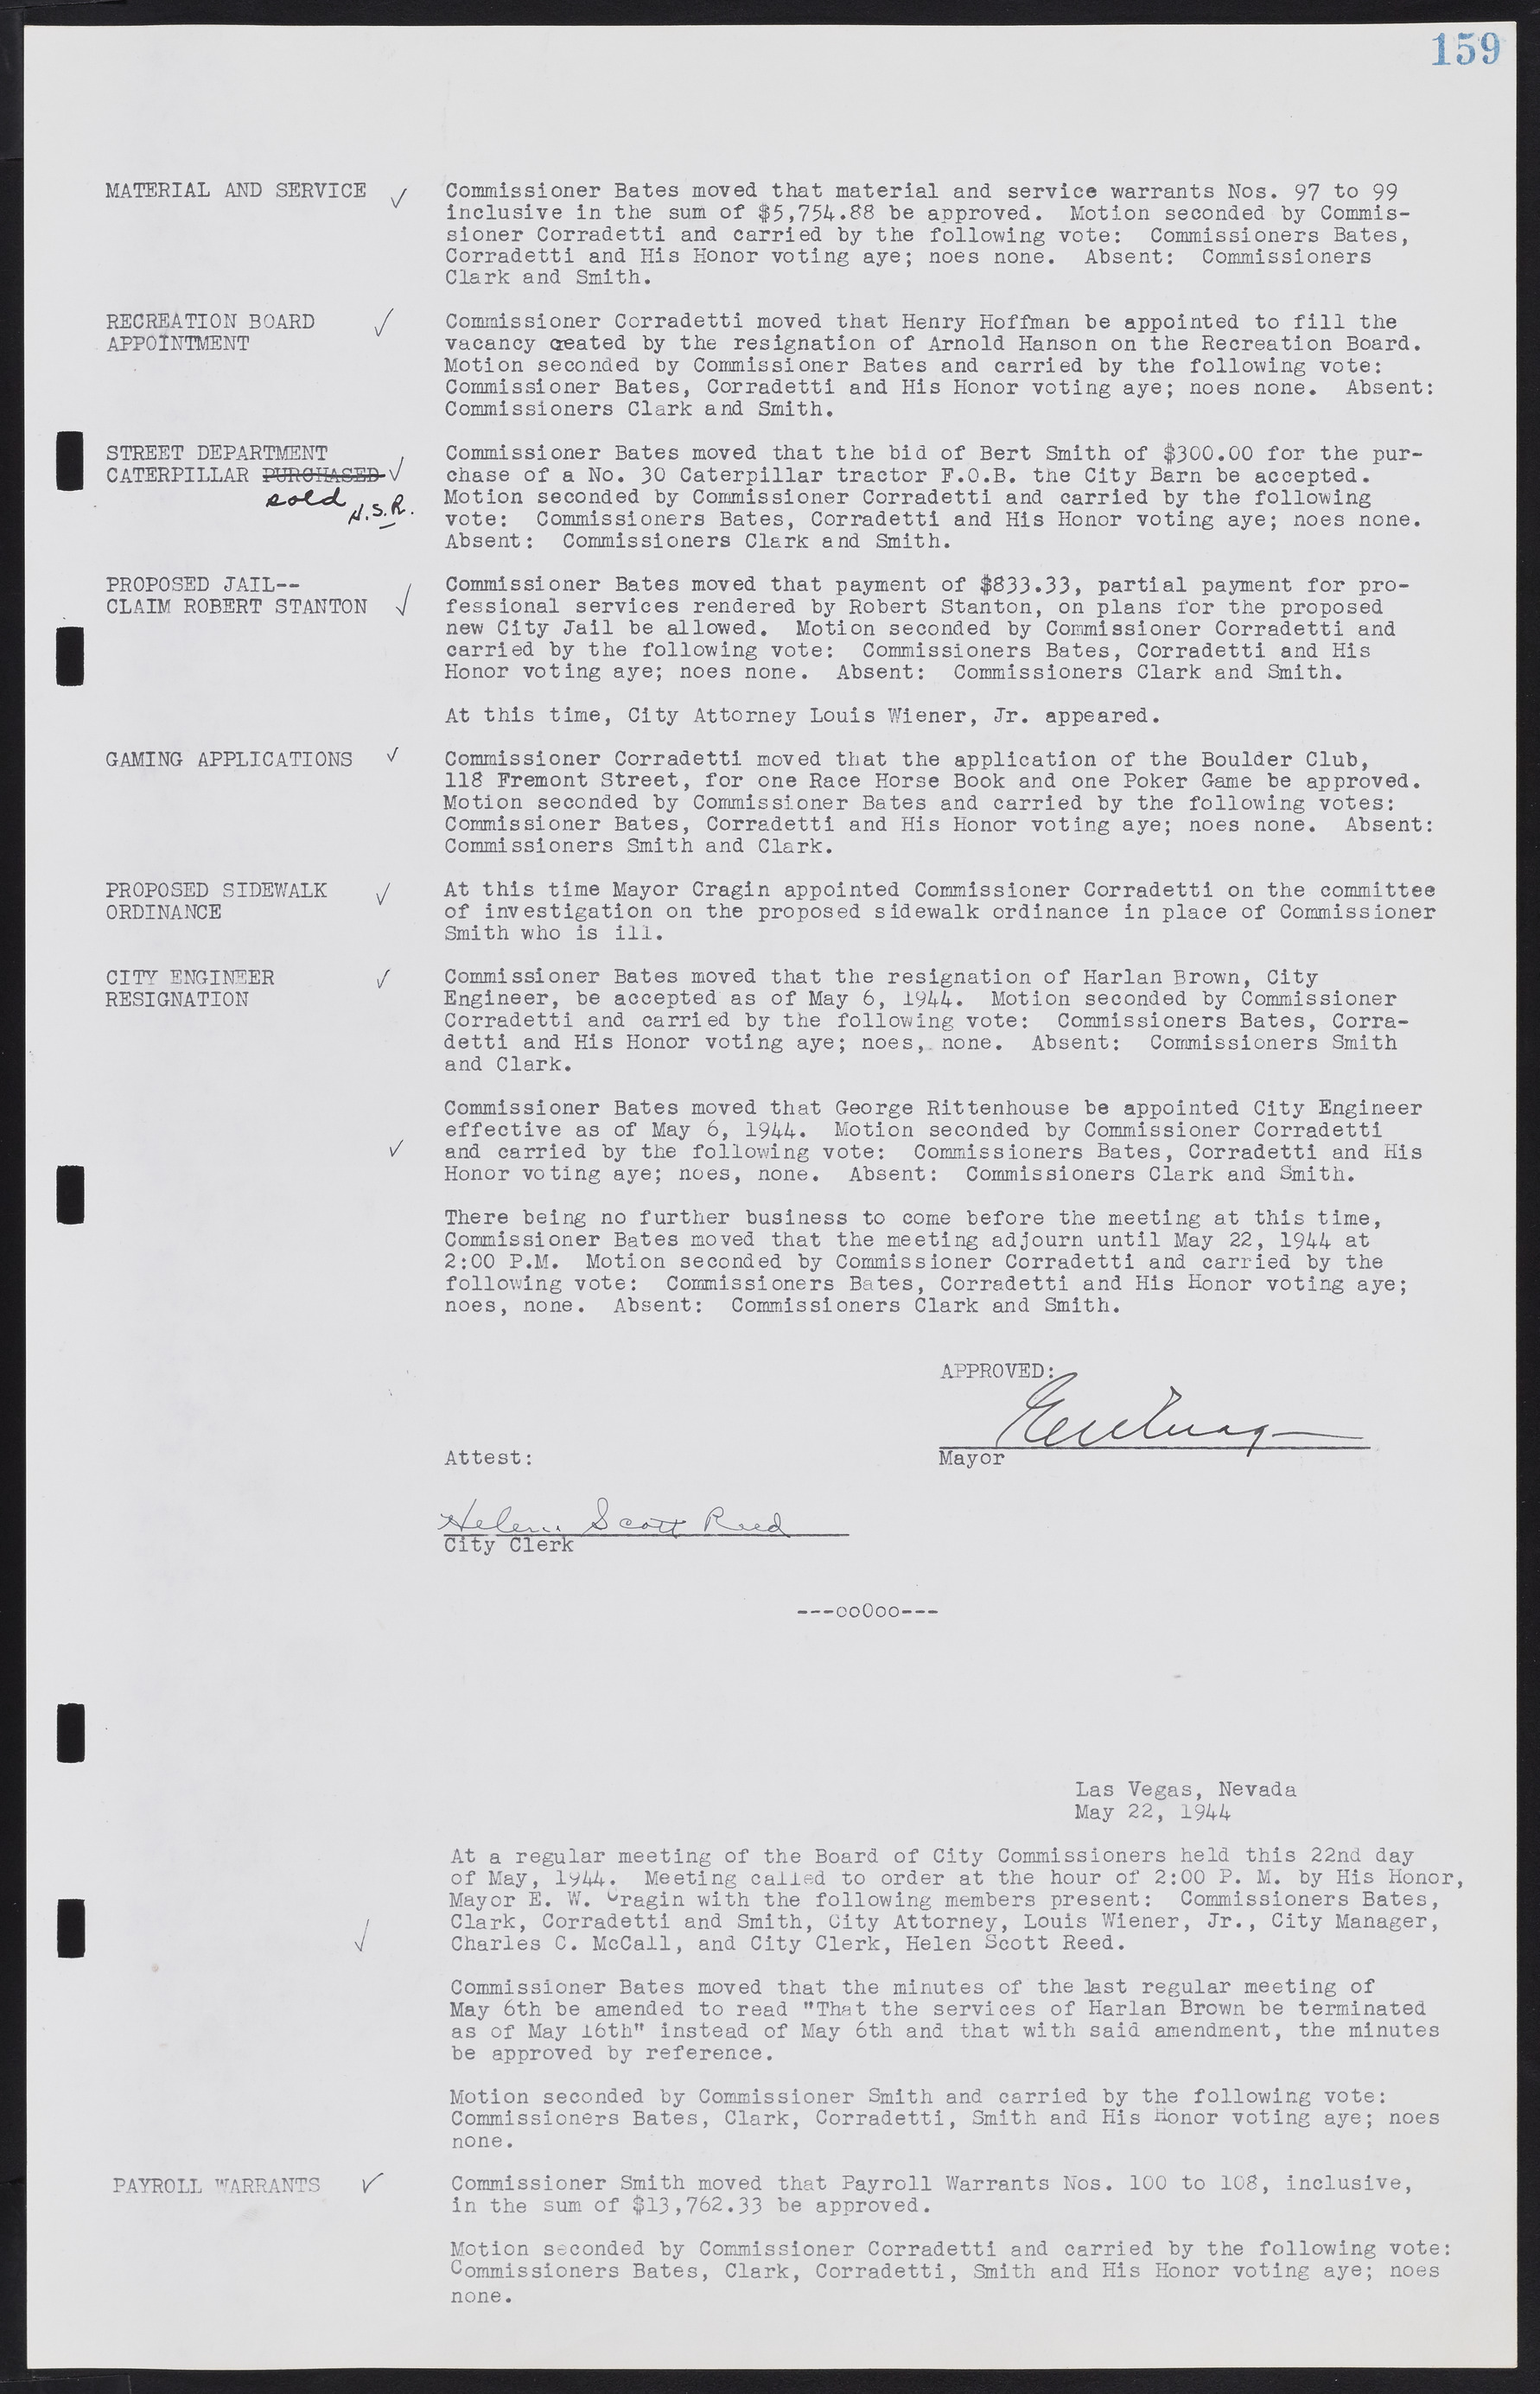 Las Vegas City Commission Minutes, August 11, 1942 to December 30, 1946, lvc000005-176